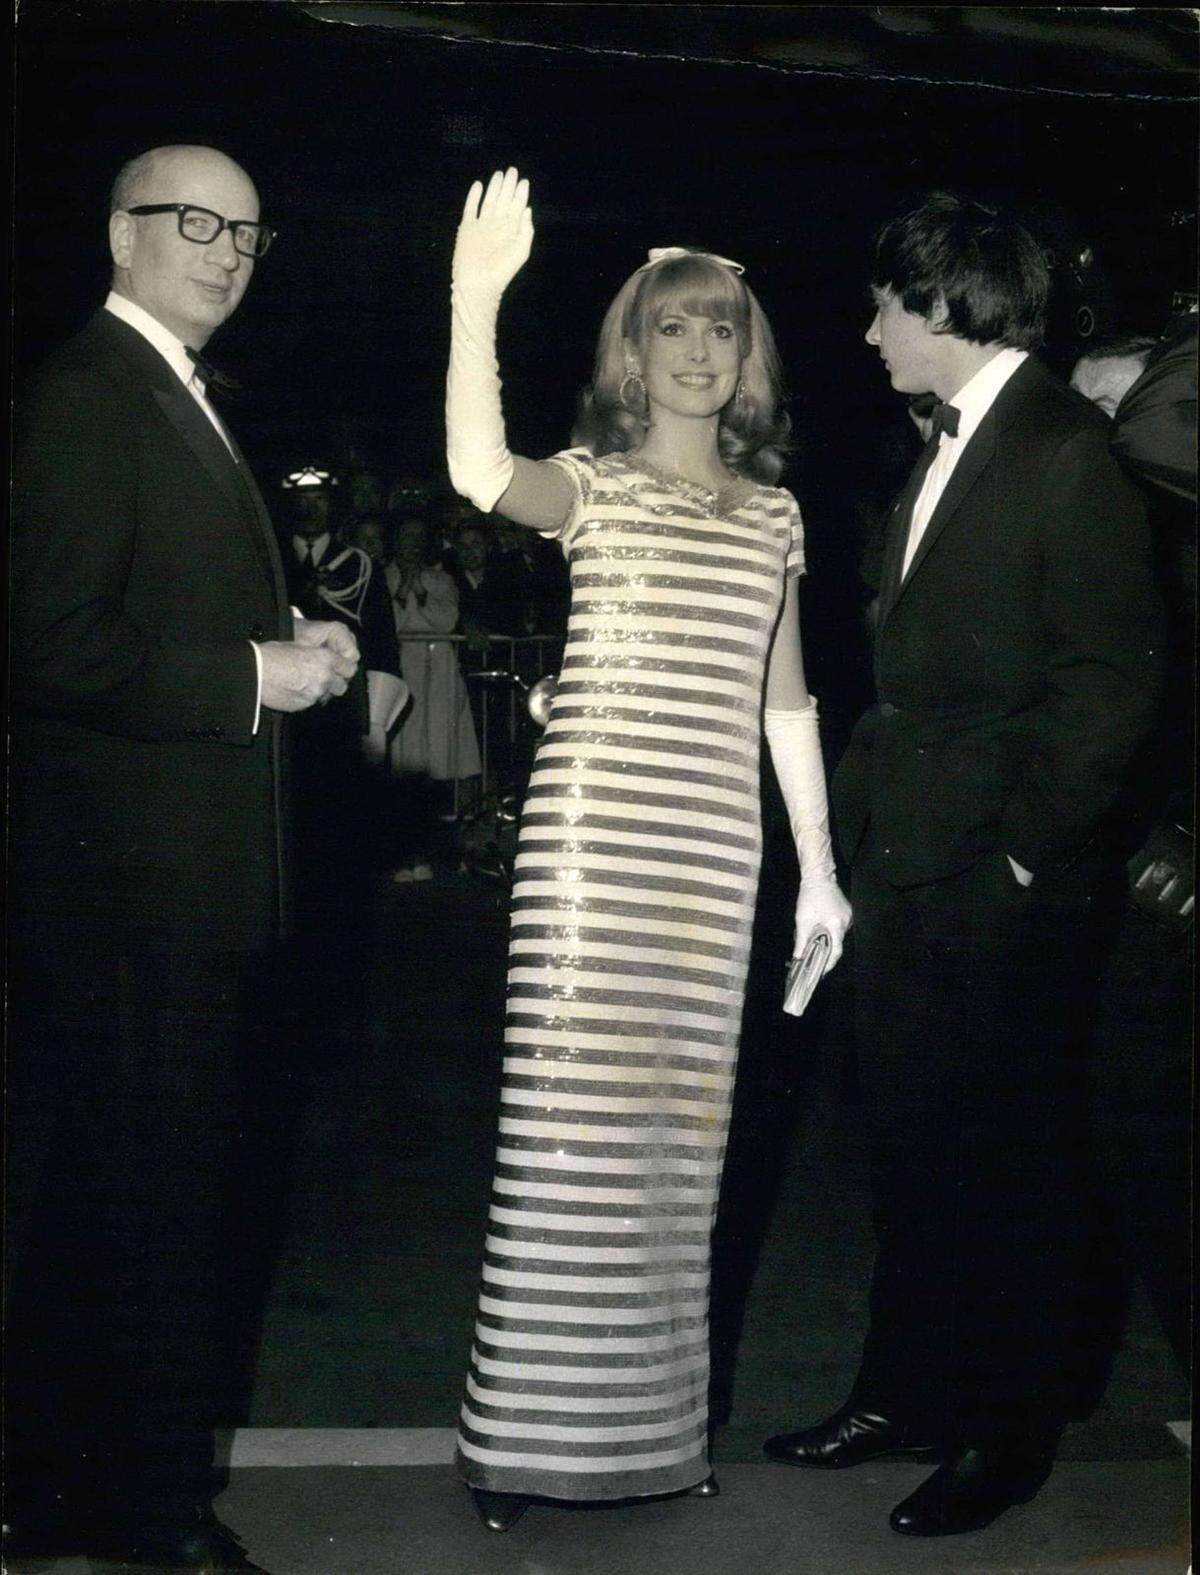 Einen Fixplatz auf der Gästeliste hat die französische Filmdiva Catherine Deneuve in Cannes noch immer. 1966 erschien sie im 60ies-Look mit gestreifter Paillettenrobe und Schleife im Haar.